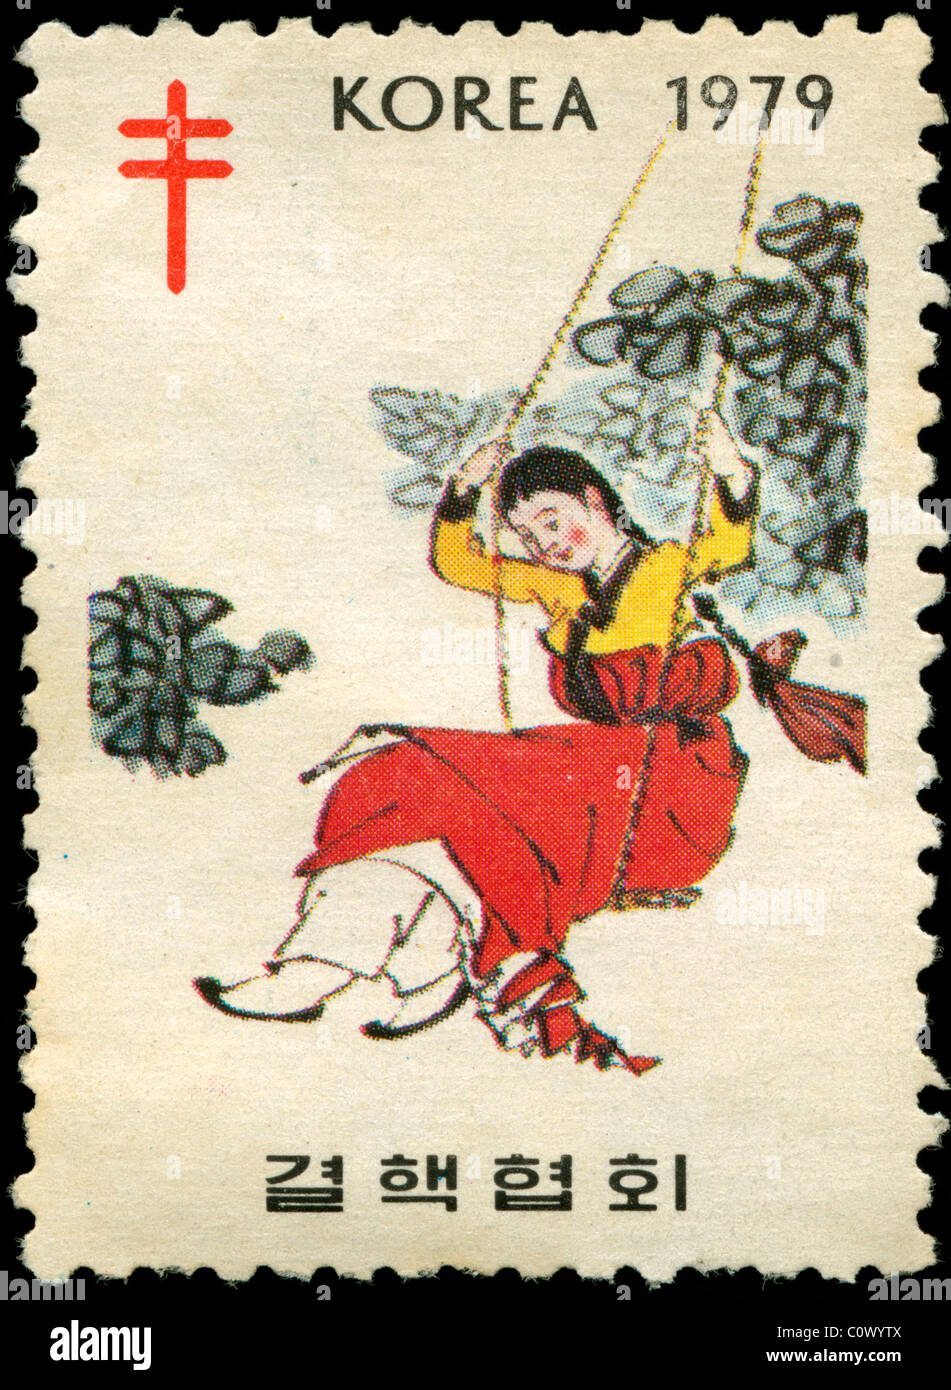 Timbre ancien de la Corée avec photo d'une jeune fille sur une balançoire Banque D'Images